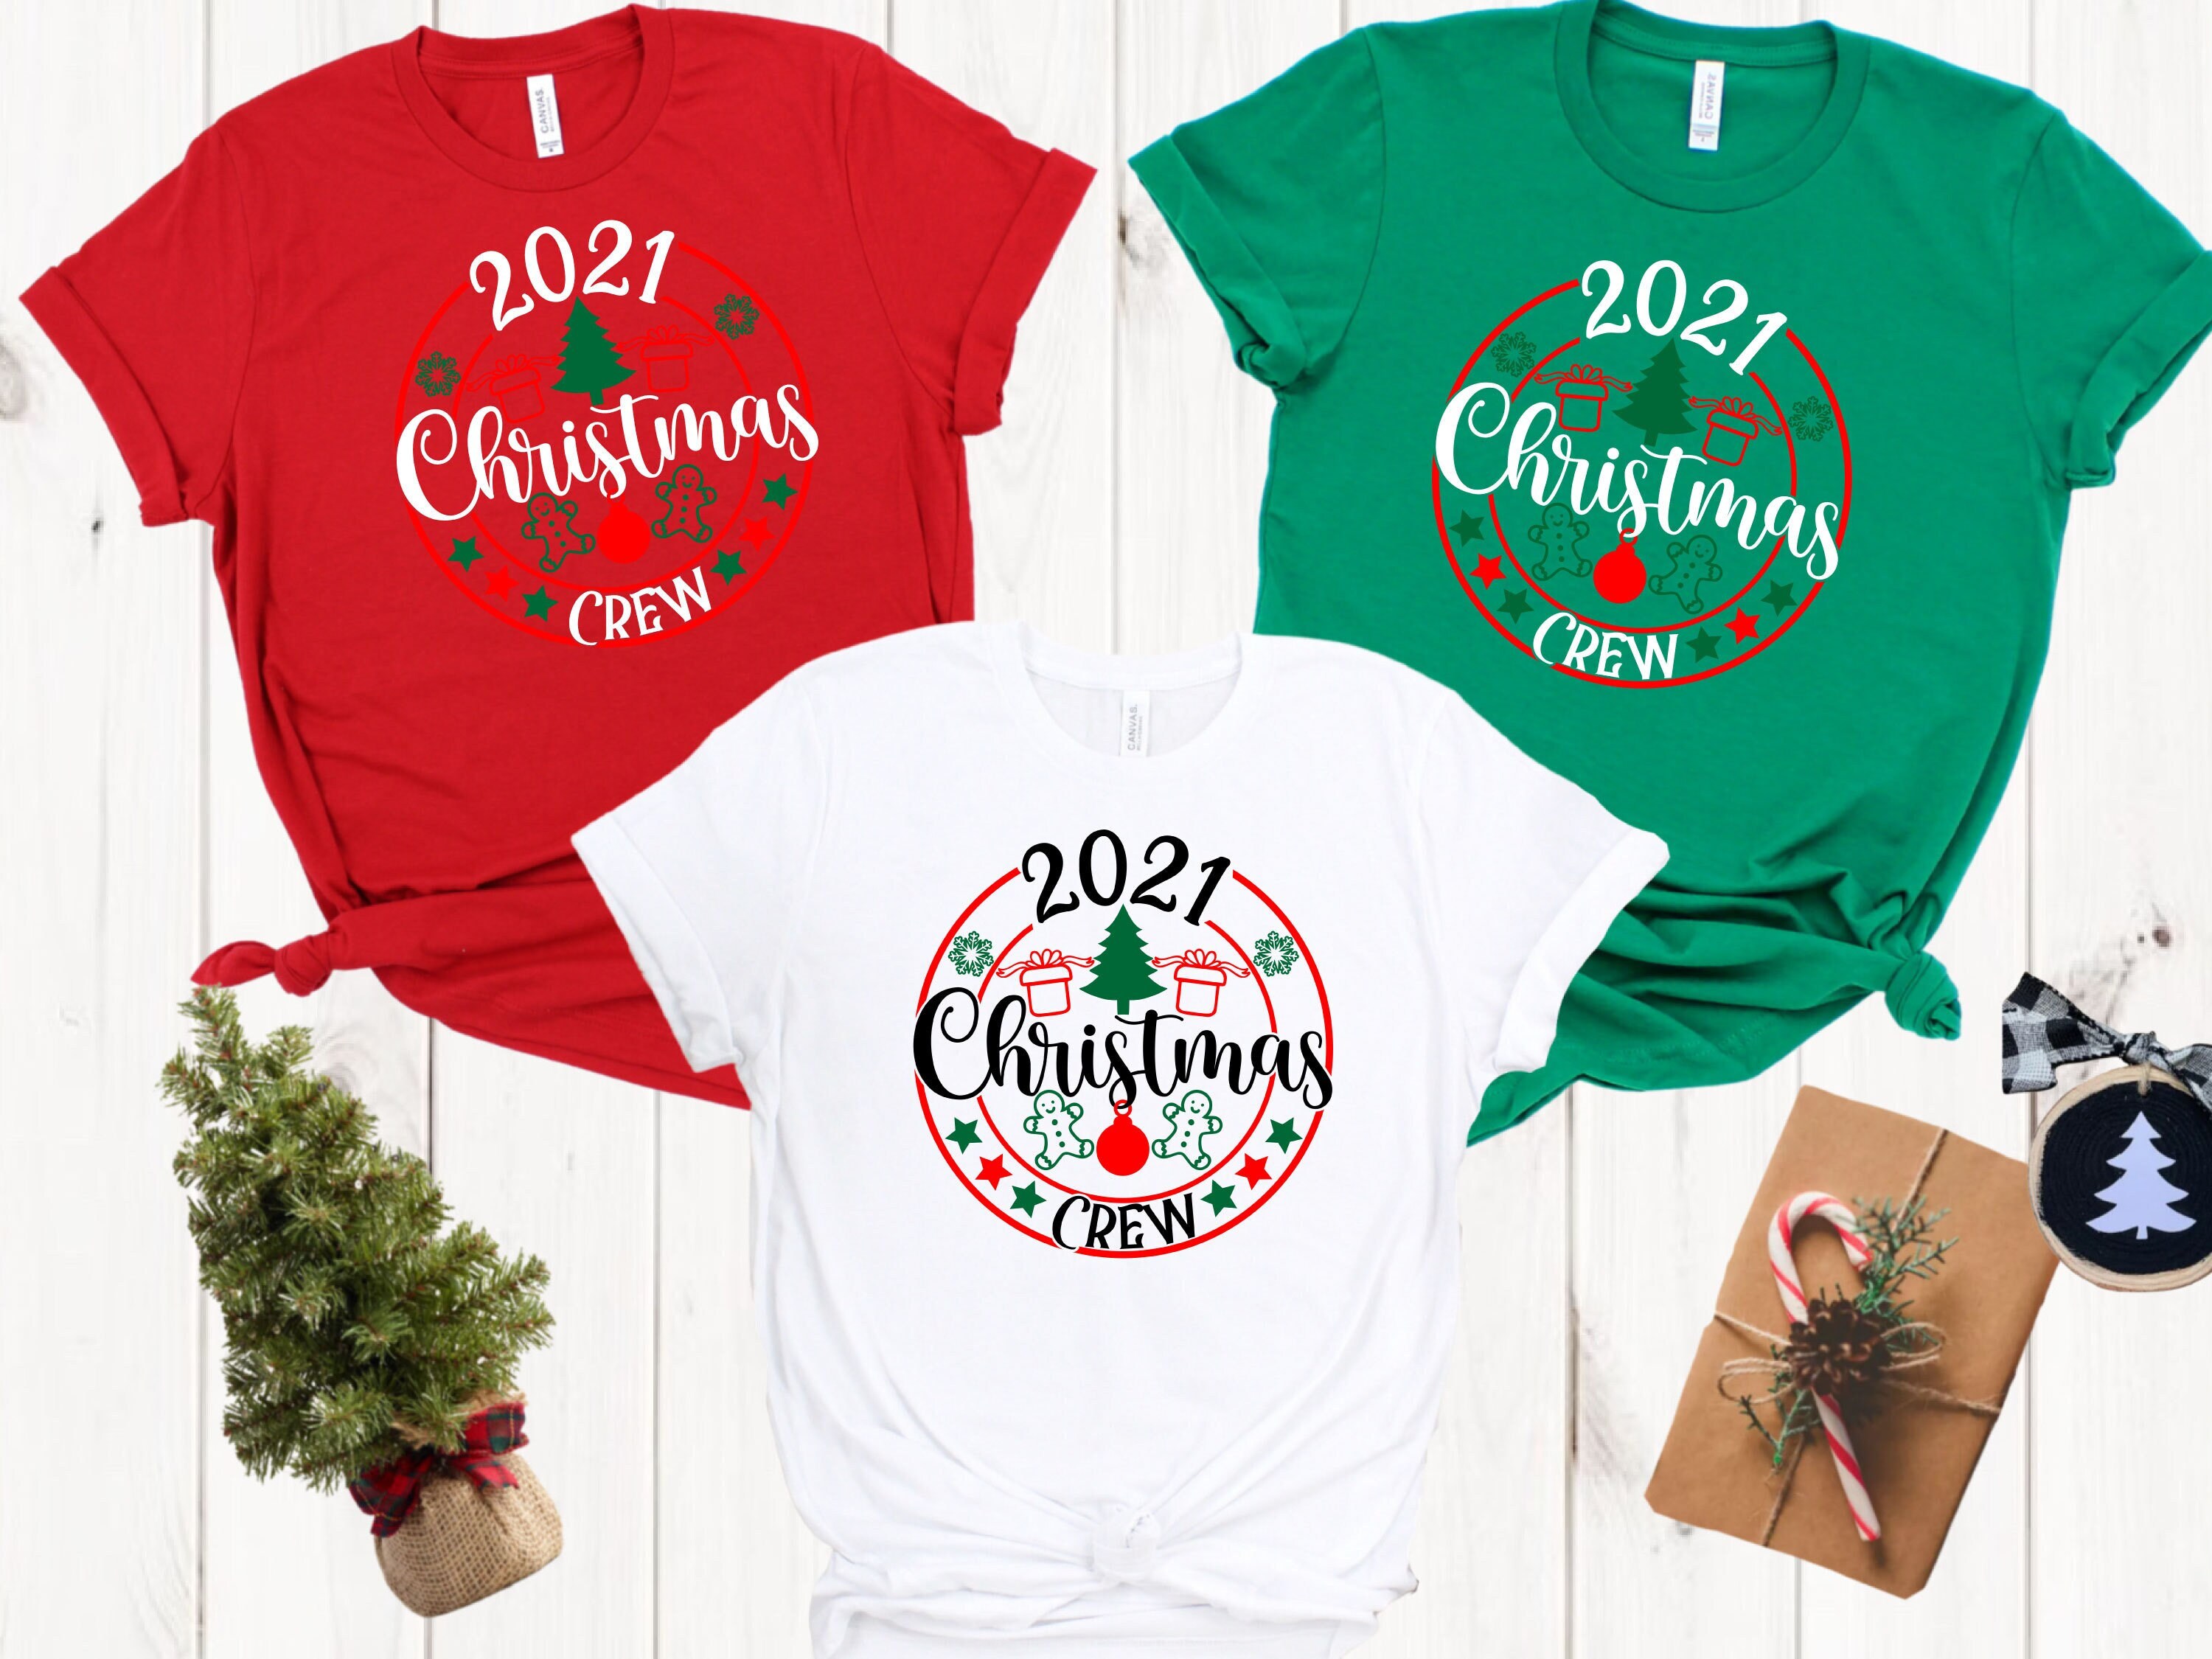 2021 Christmas Crew Shirt, Merry Christmas Shirt, Family Christmas Pajamas, Couples Gift, Family Christmas Shirt, Christmas Gift, Xmas Shirt